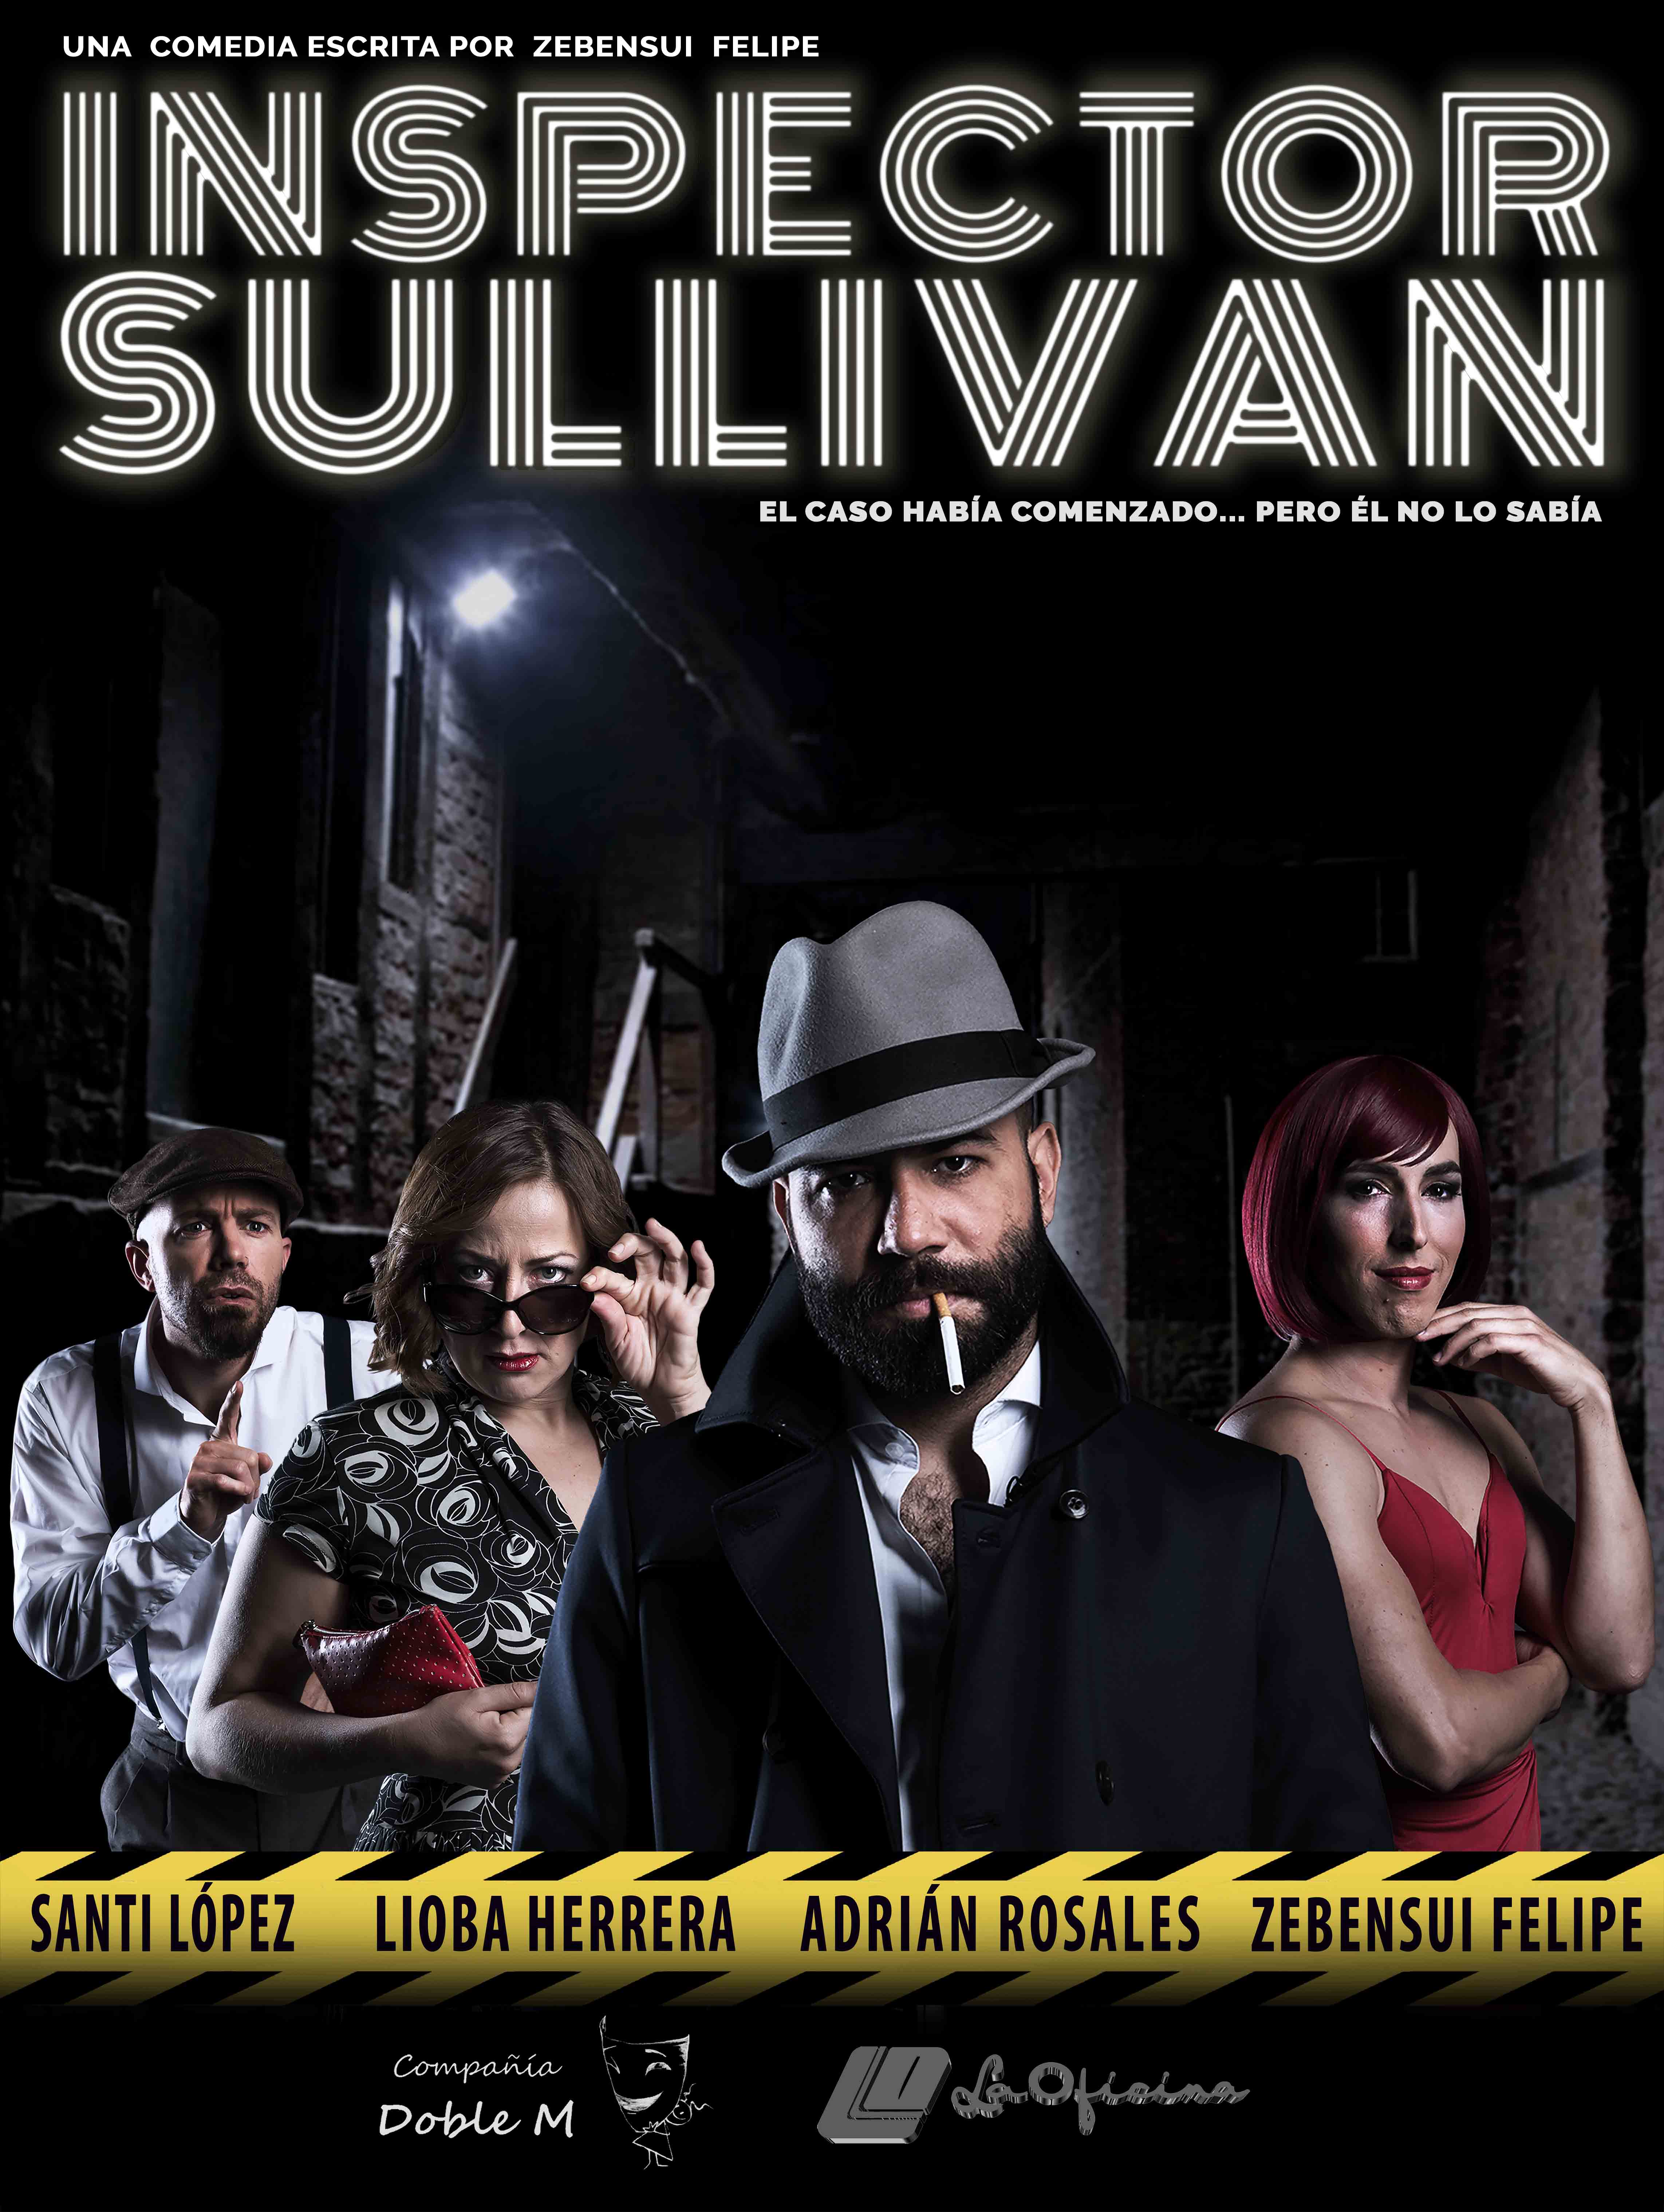 La comedia ‘Inspector Sullivan’ visita el Teatro Guimerá